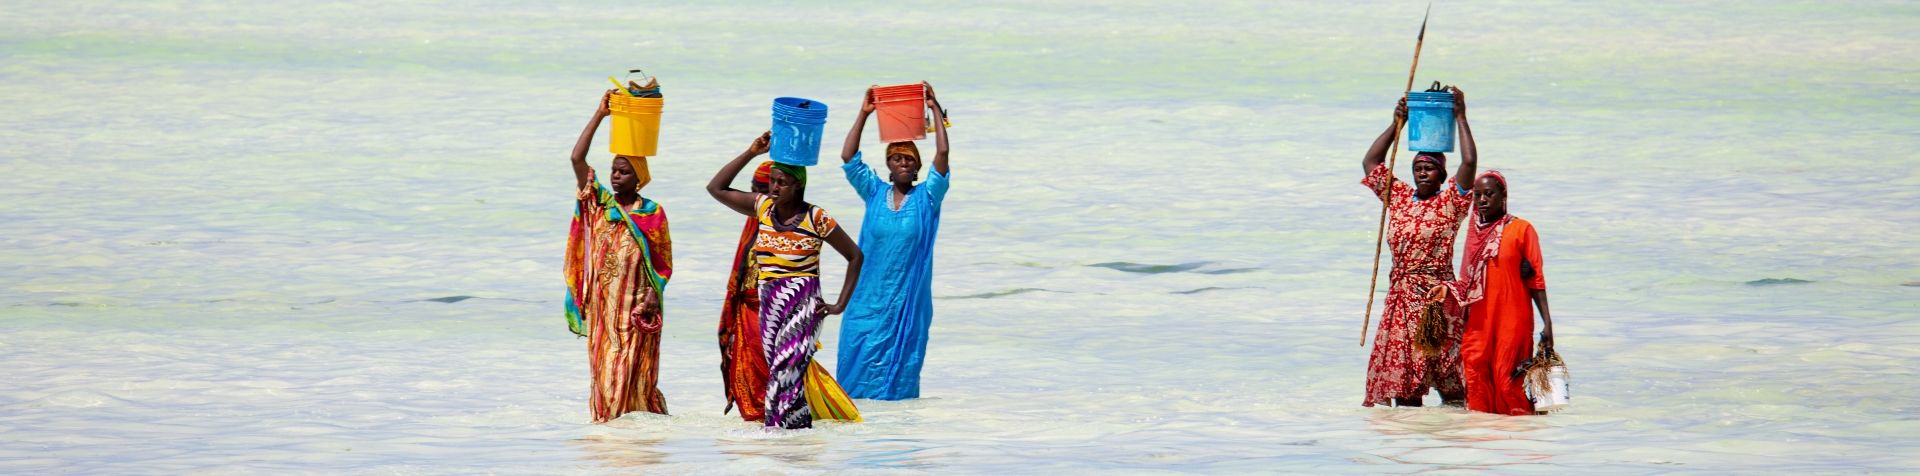 밝은색의 아프리카 전통 드레스와 스커트를 입은 세네갈 여성 여섯 명이 머리에 색색의 양동이를 이고 무릎 높이까지 오는 물속을 걷고 있습니다.